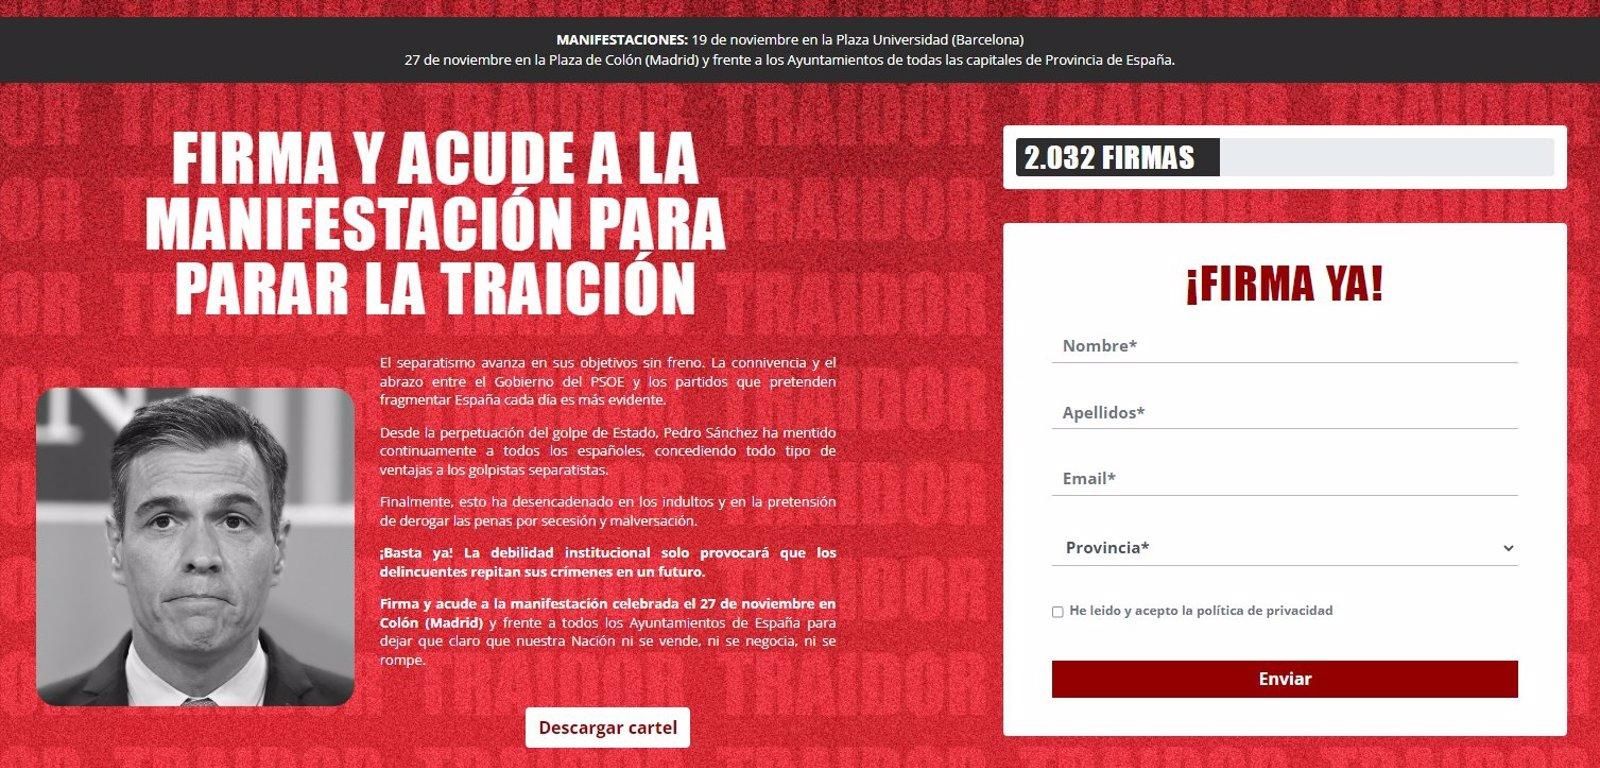 Vox inicia una recogida de firmas contra Sánchez como movilización para una gran manifestación en Colón el día 27